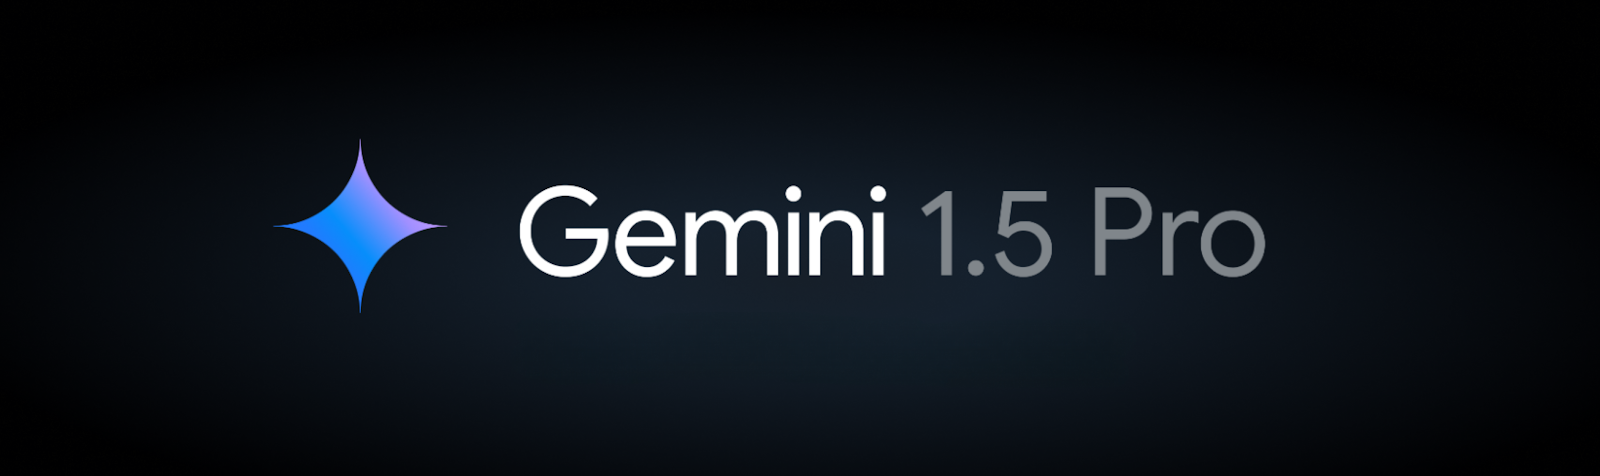 Google Gemini 1.5 Pro'yu Piyasaya Sürüyor